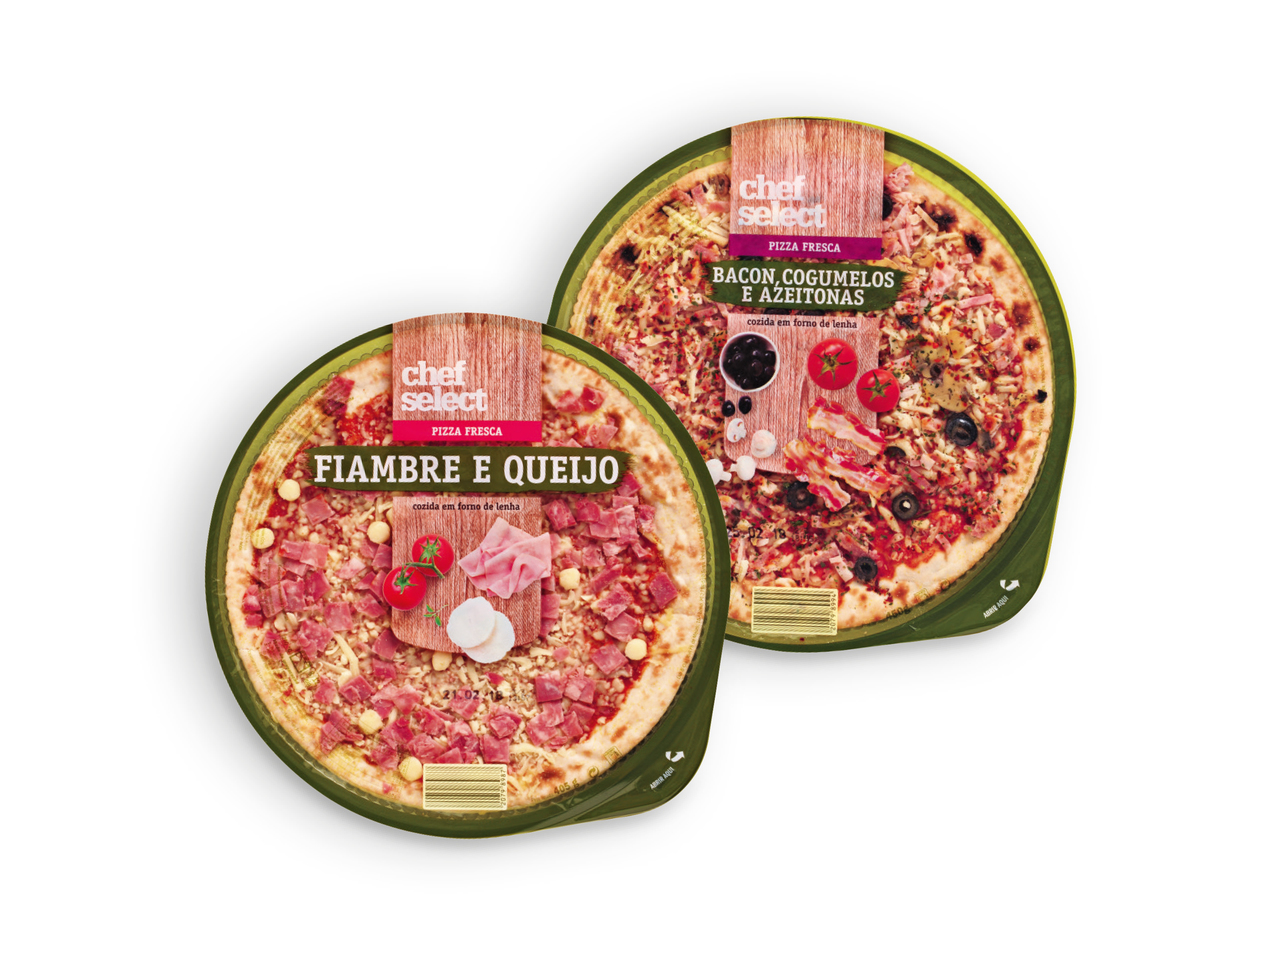 CHEF SELECT(R) Pizza Bacon e Cogumelos / Fiambre e Queijo